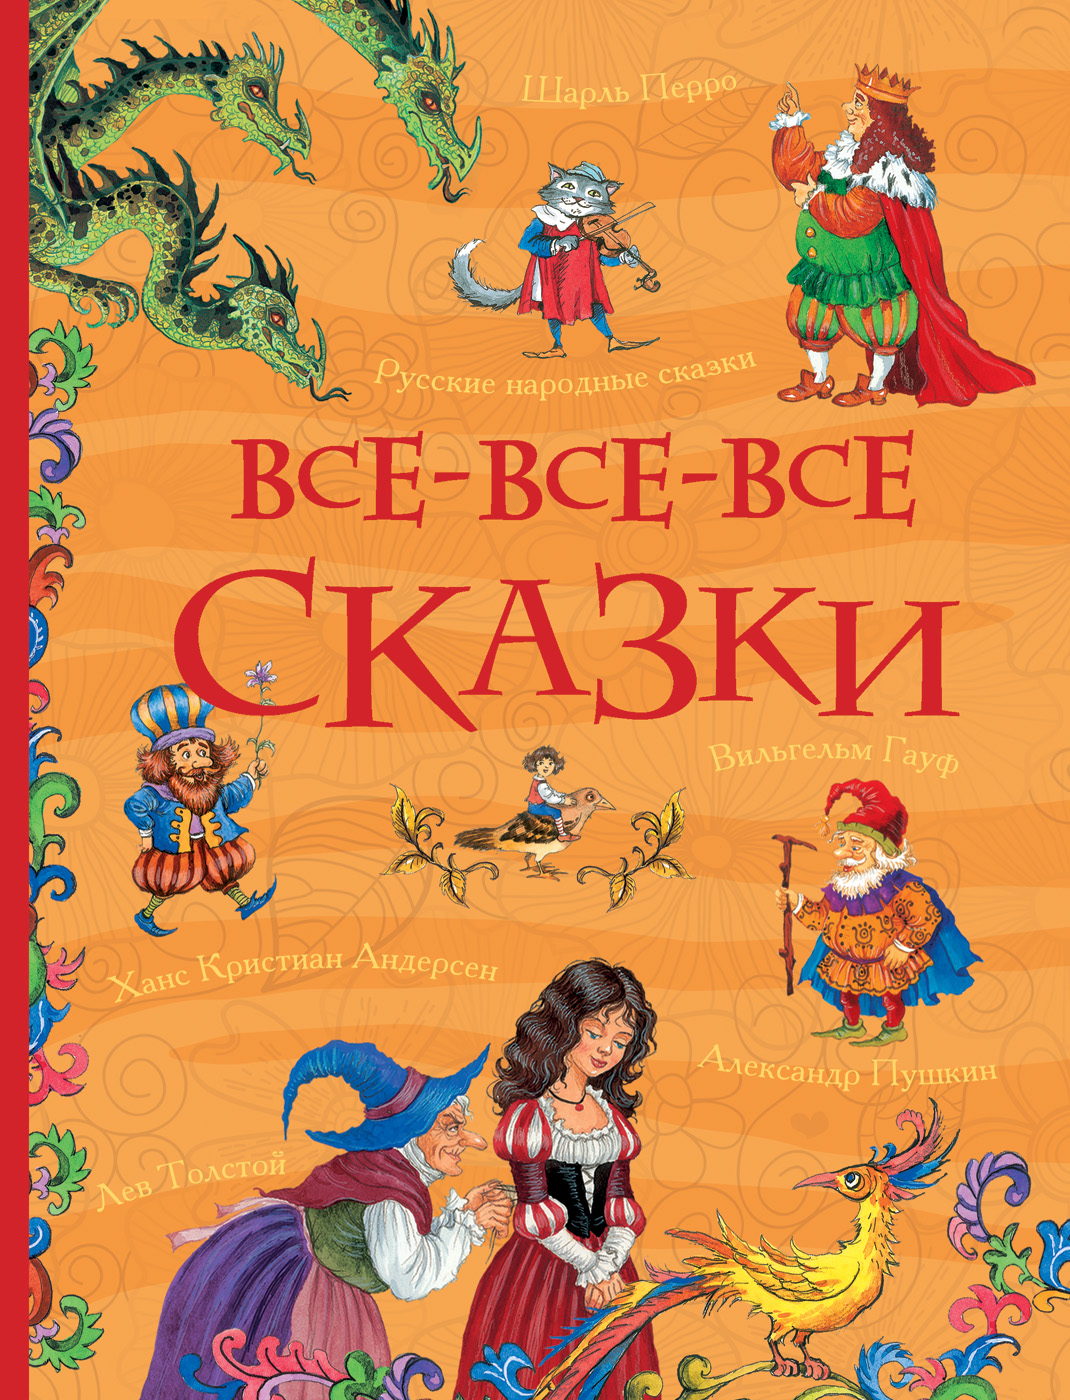 Книга 31348 "Все-все-все сказки"  (Все истории) Росмэн - Омск 